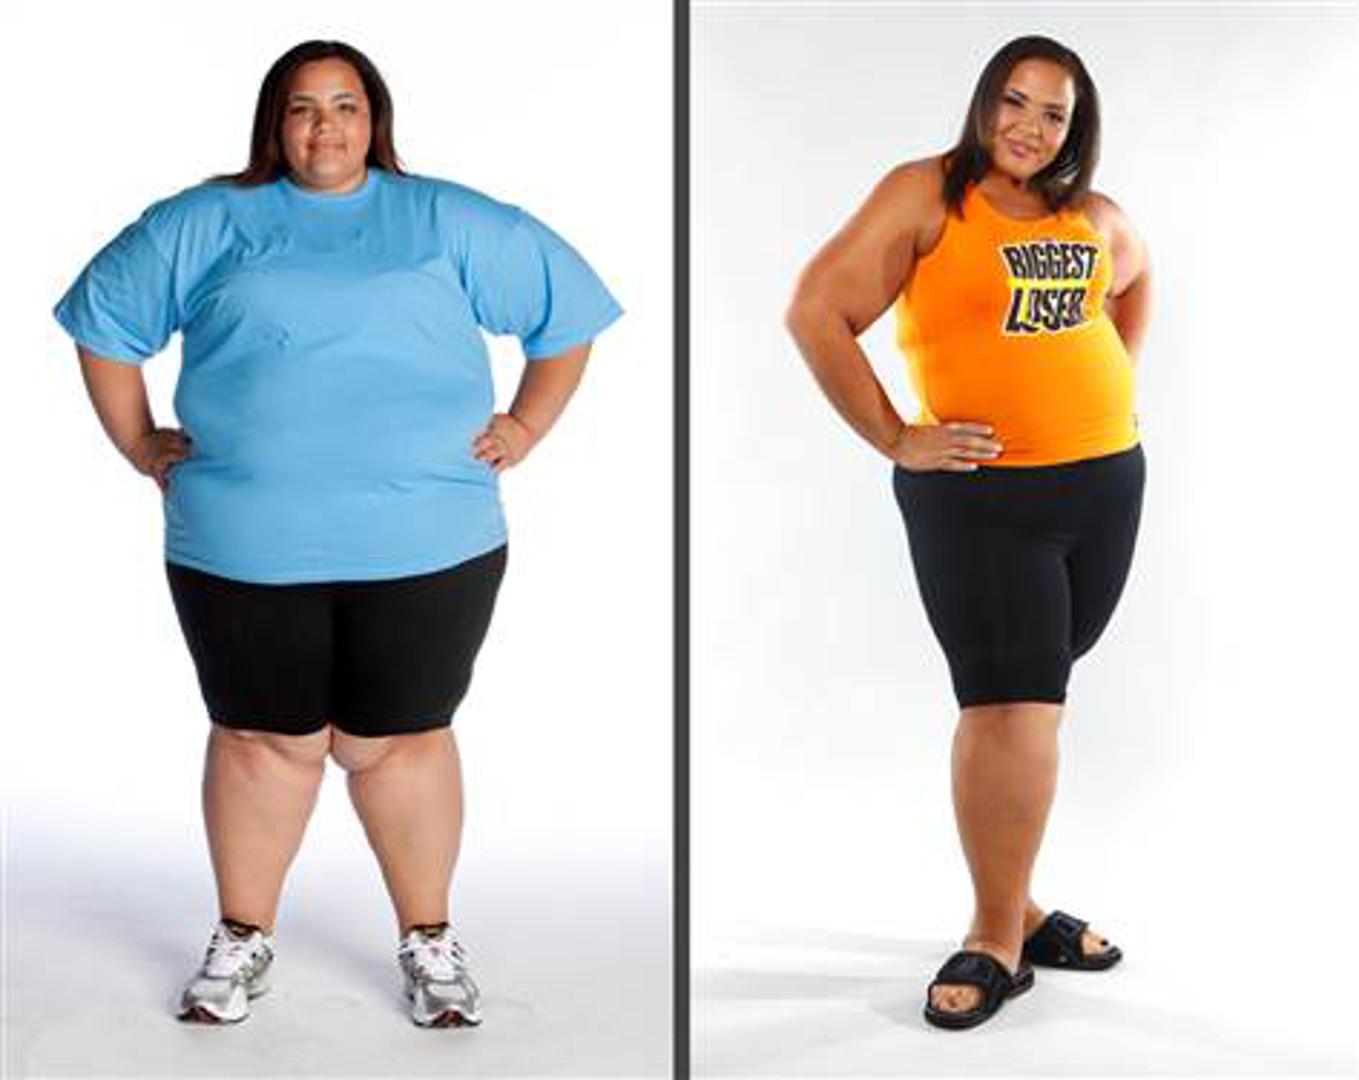 Shay Sorrells natjecateljica je s najviše kilograma. Ušla je show s 215 kg, a na kraju je izgubila više od trećine svoje težine.